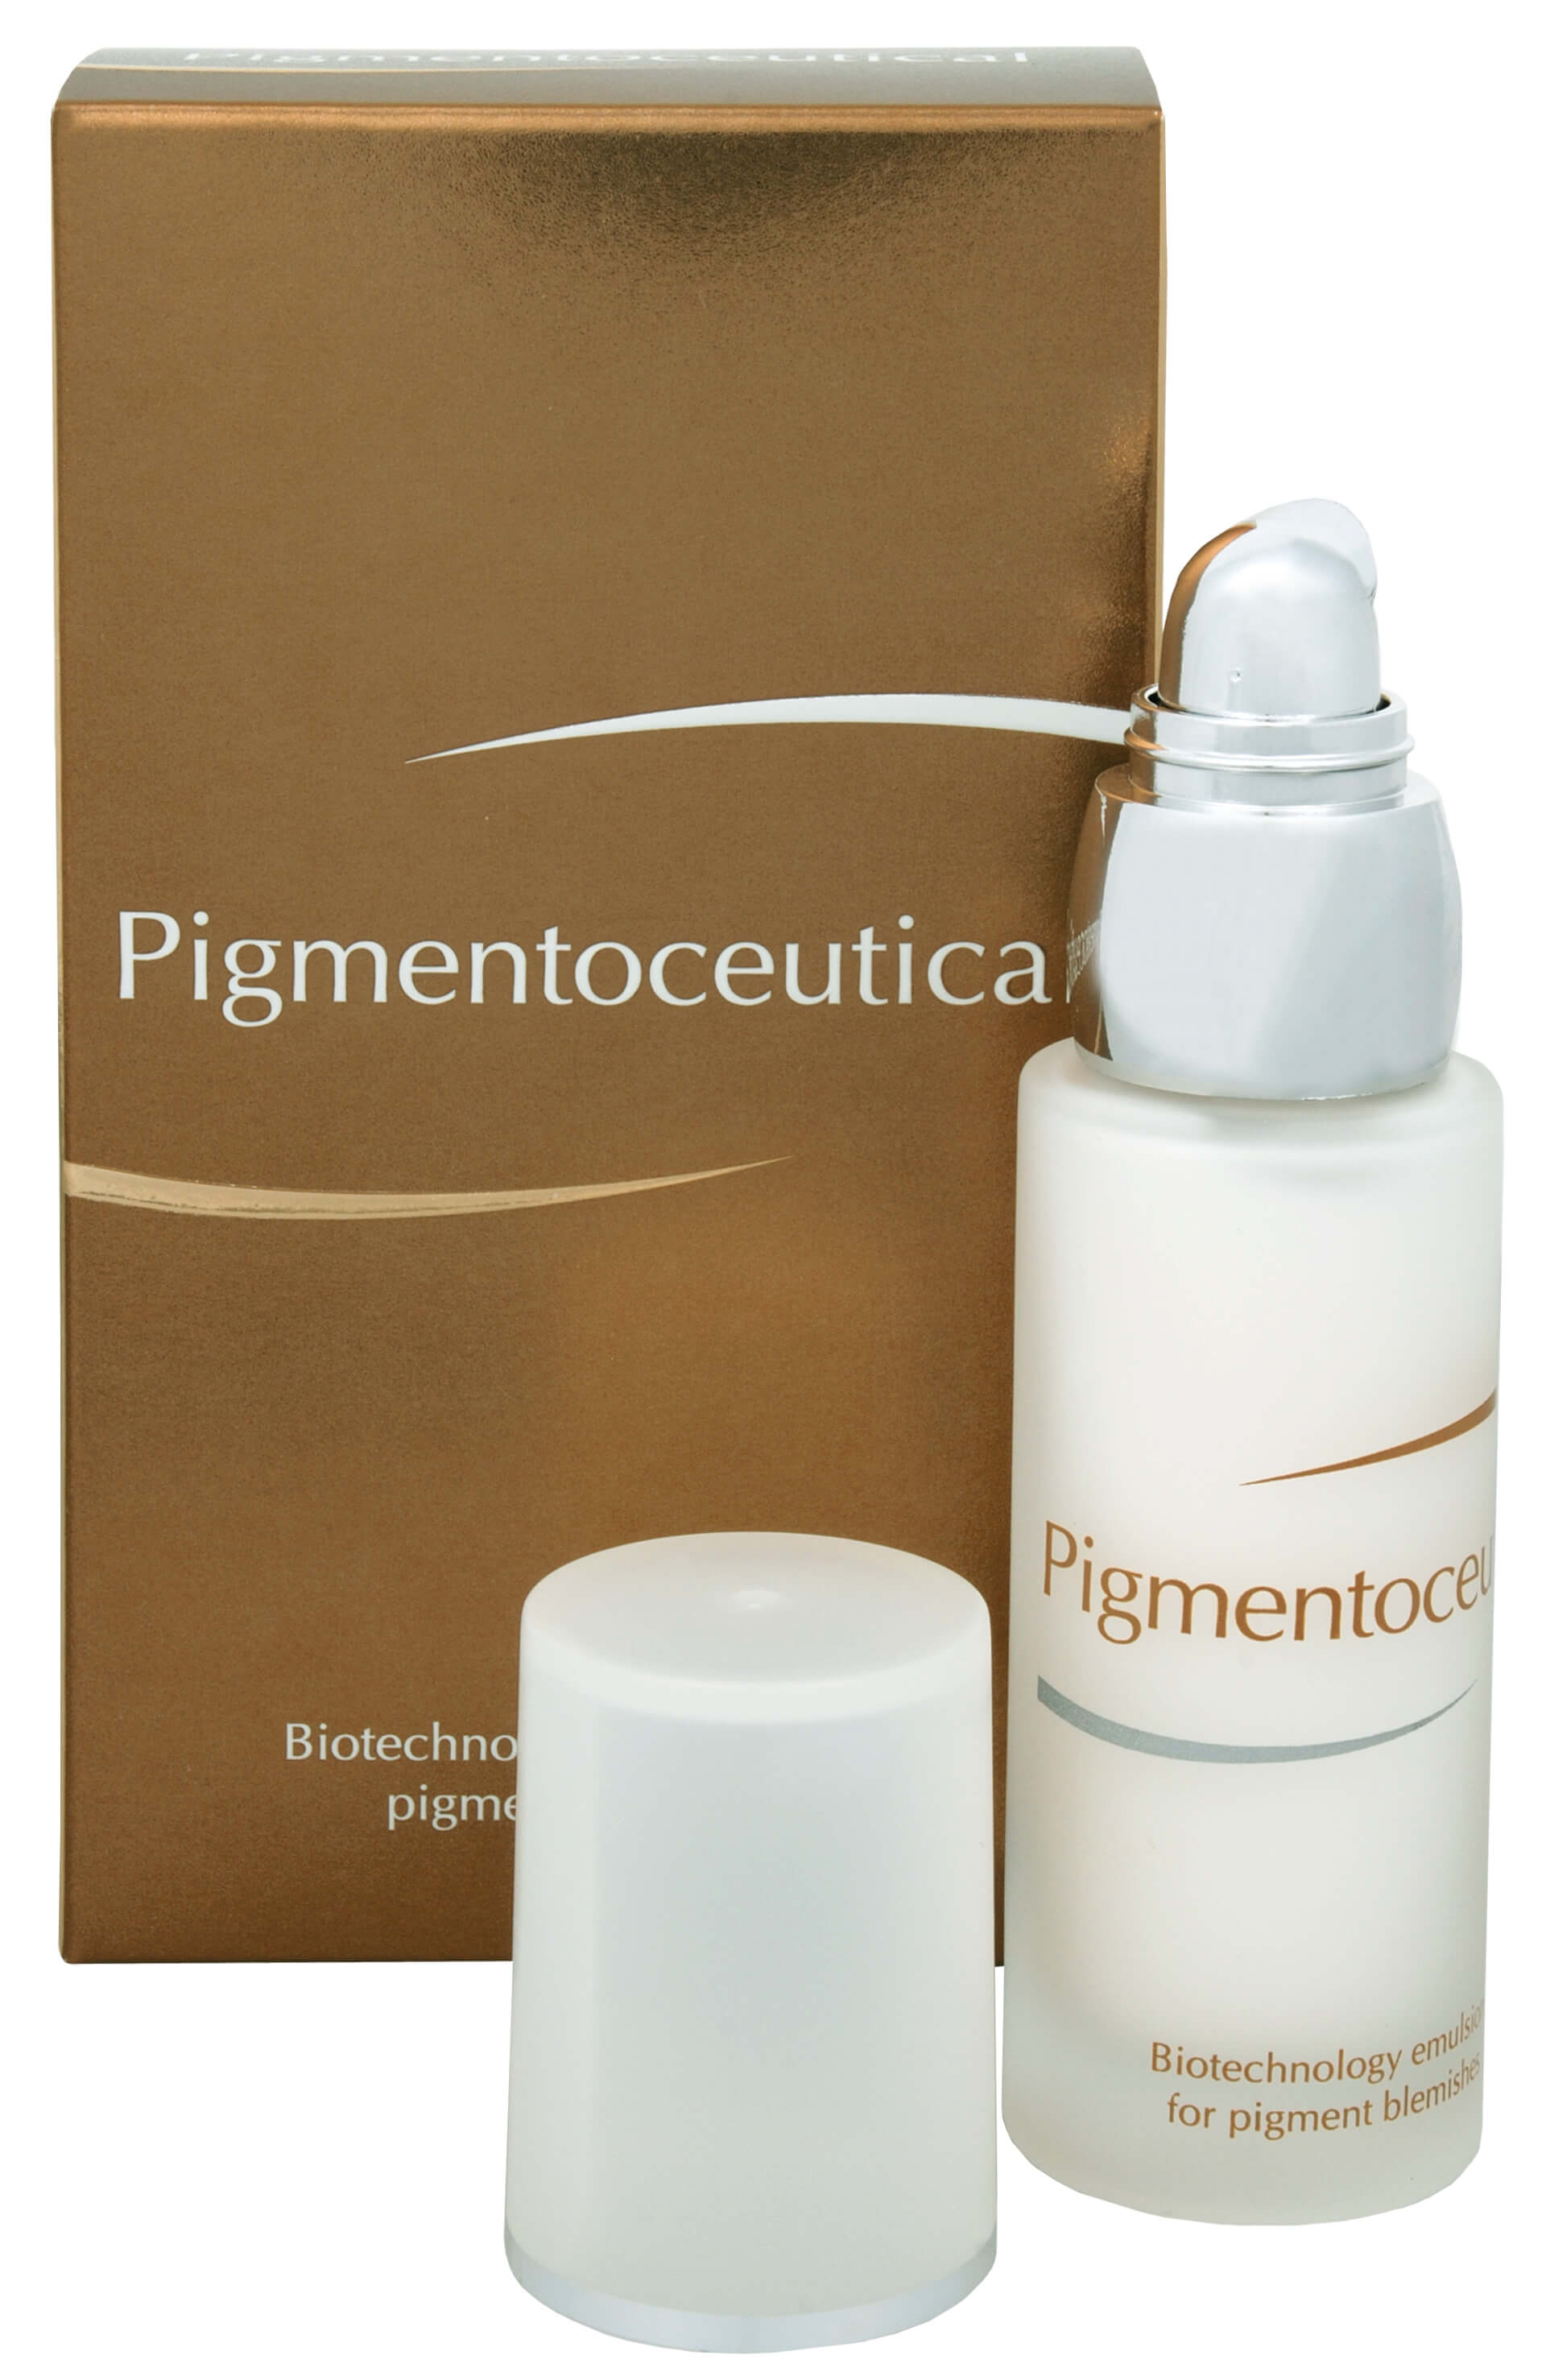 Zobrazit detail výrobku Fytofontana Pigmentoceutical - biotechnologická emulze na pigmentové skvrny 30 ml